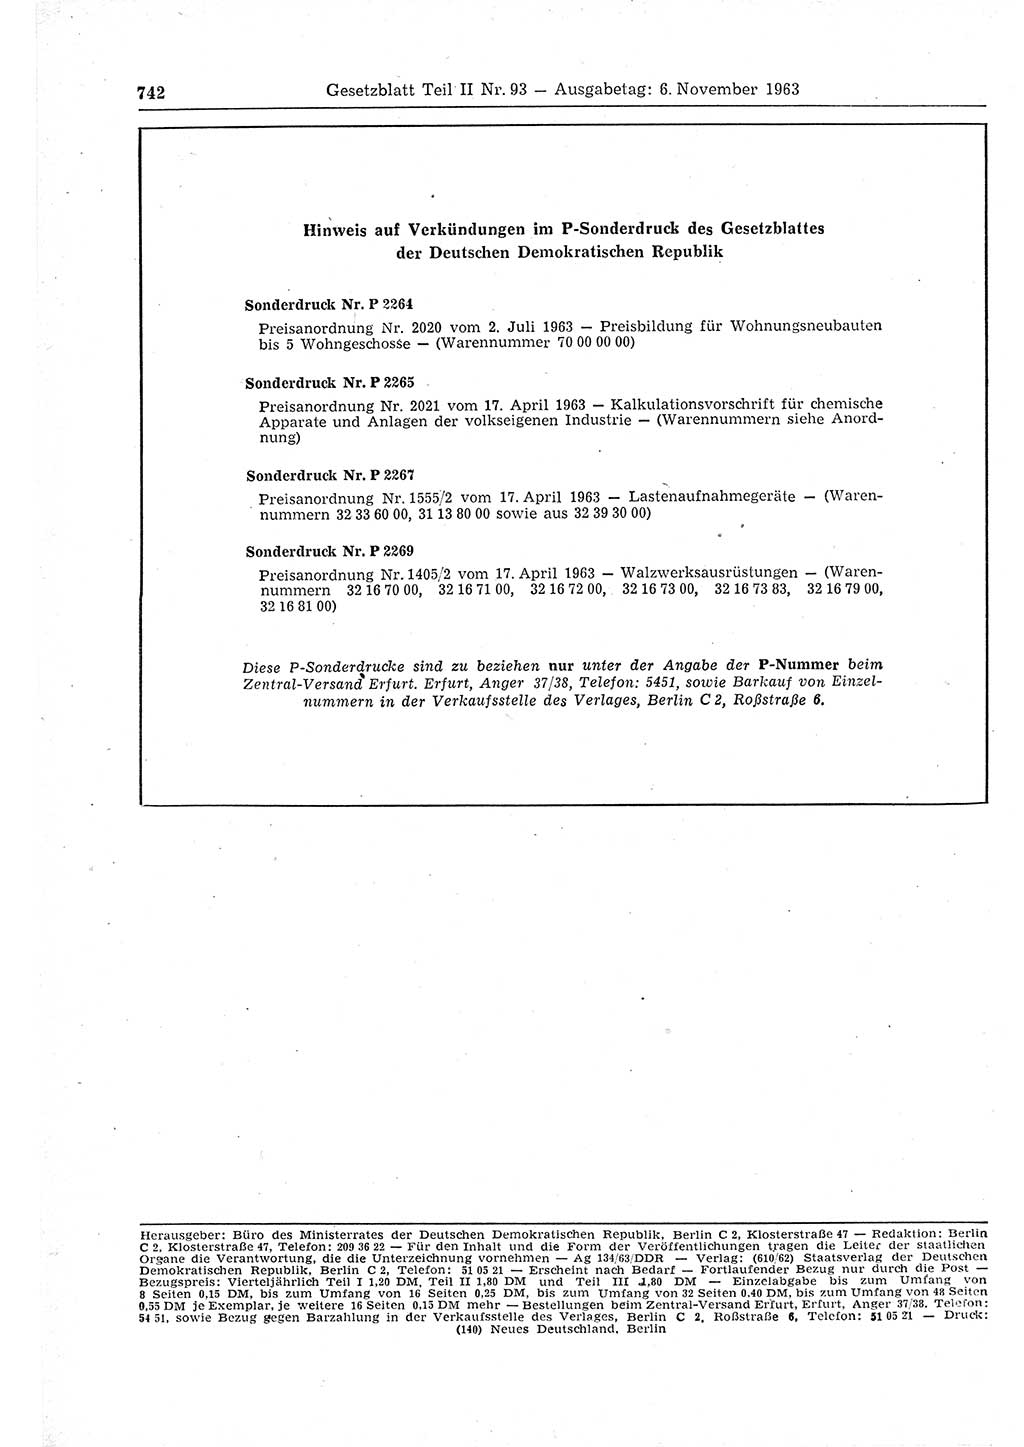 Gesetzblatt (GBl.) der Deutschen Demokratischen Republik (DDR) Teil ⅠⅠ 1963, Seite 742 (GBl. DDR ⅠⅠ 1963, S. 742)